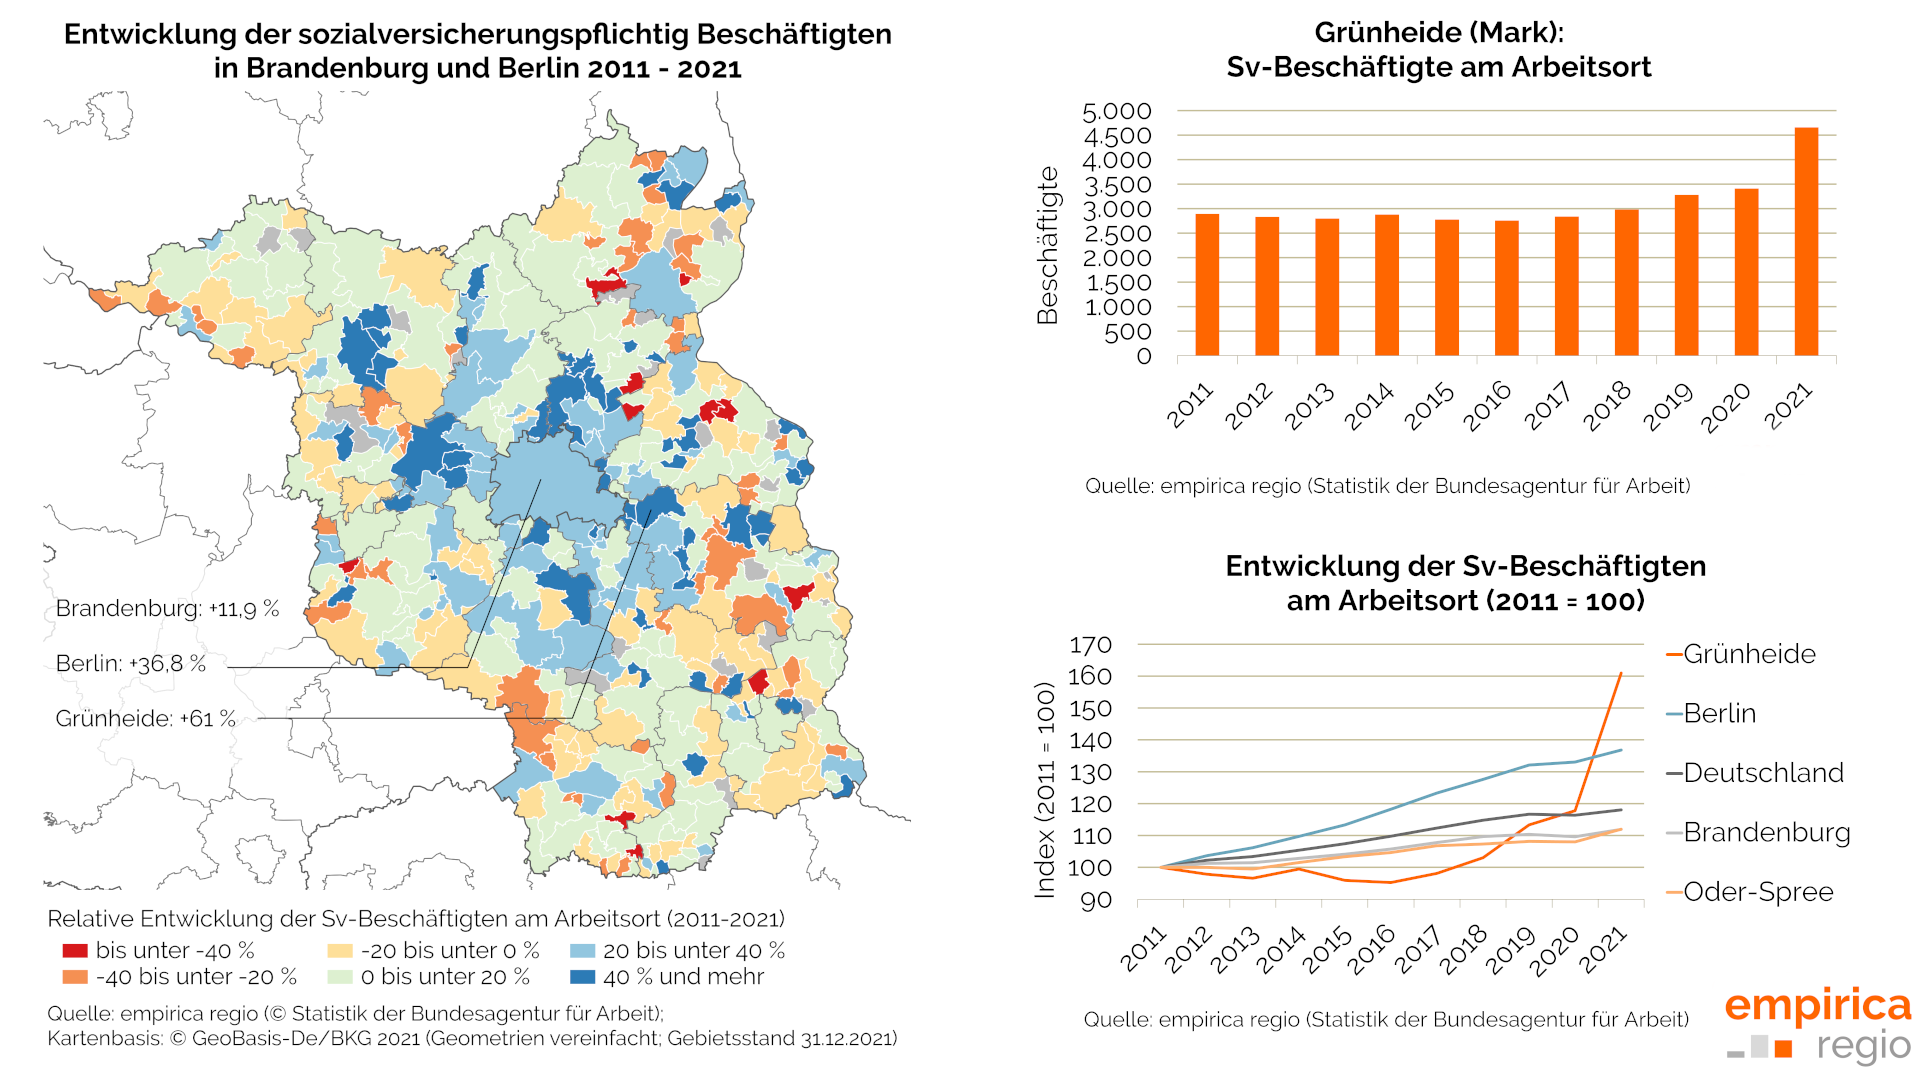 Beschäftigungsentwicklung in Brandenburg, Vergleichsregionen und in Grünheide